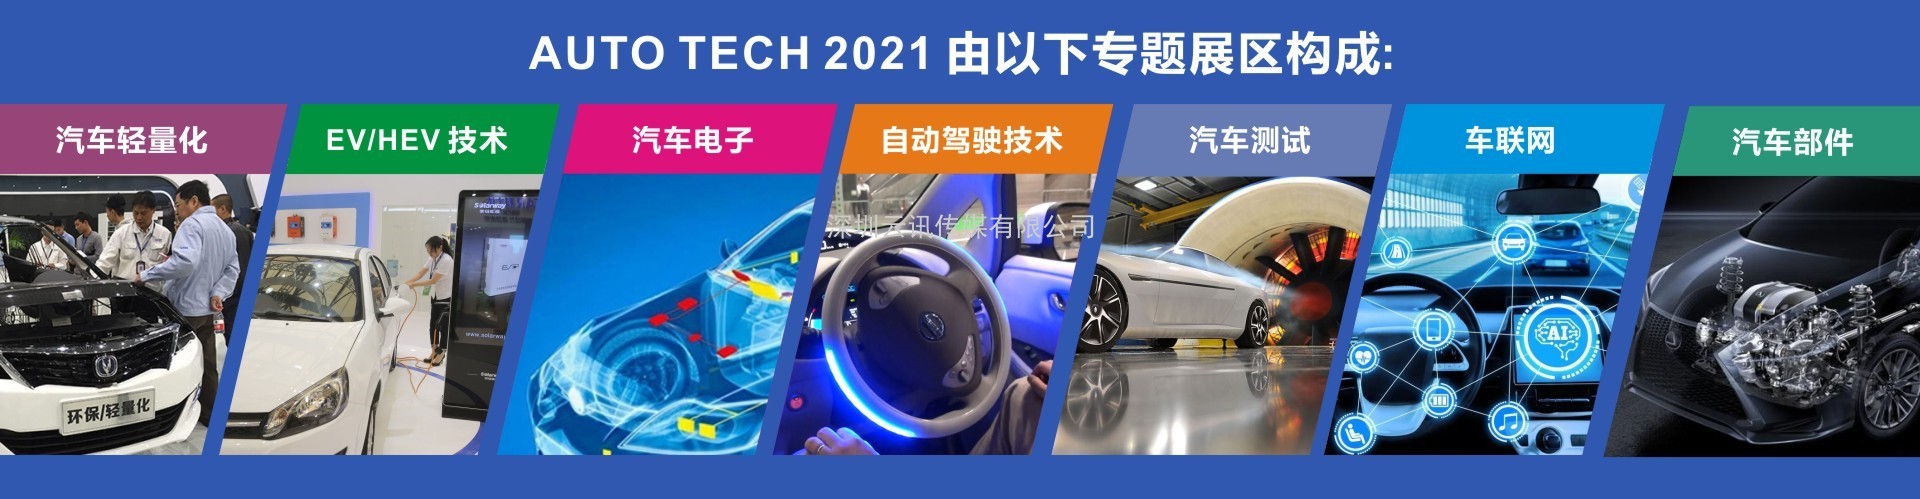 AUTO TECH 2021中国广州国际汽车技术展览会，观众预登记火热注册中！